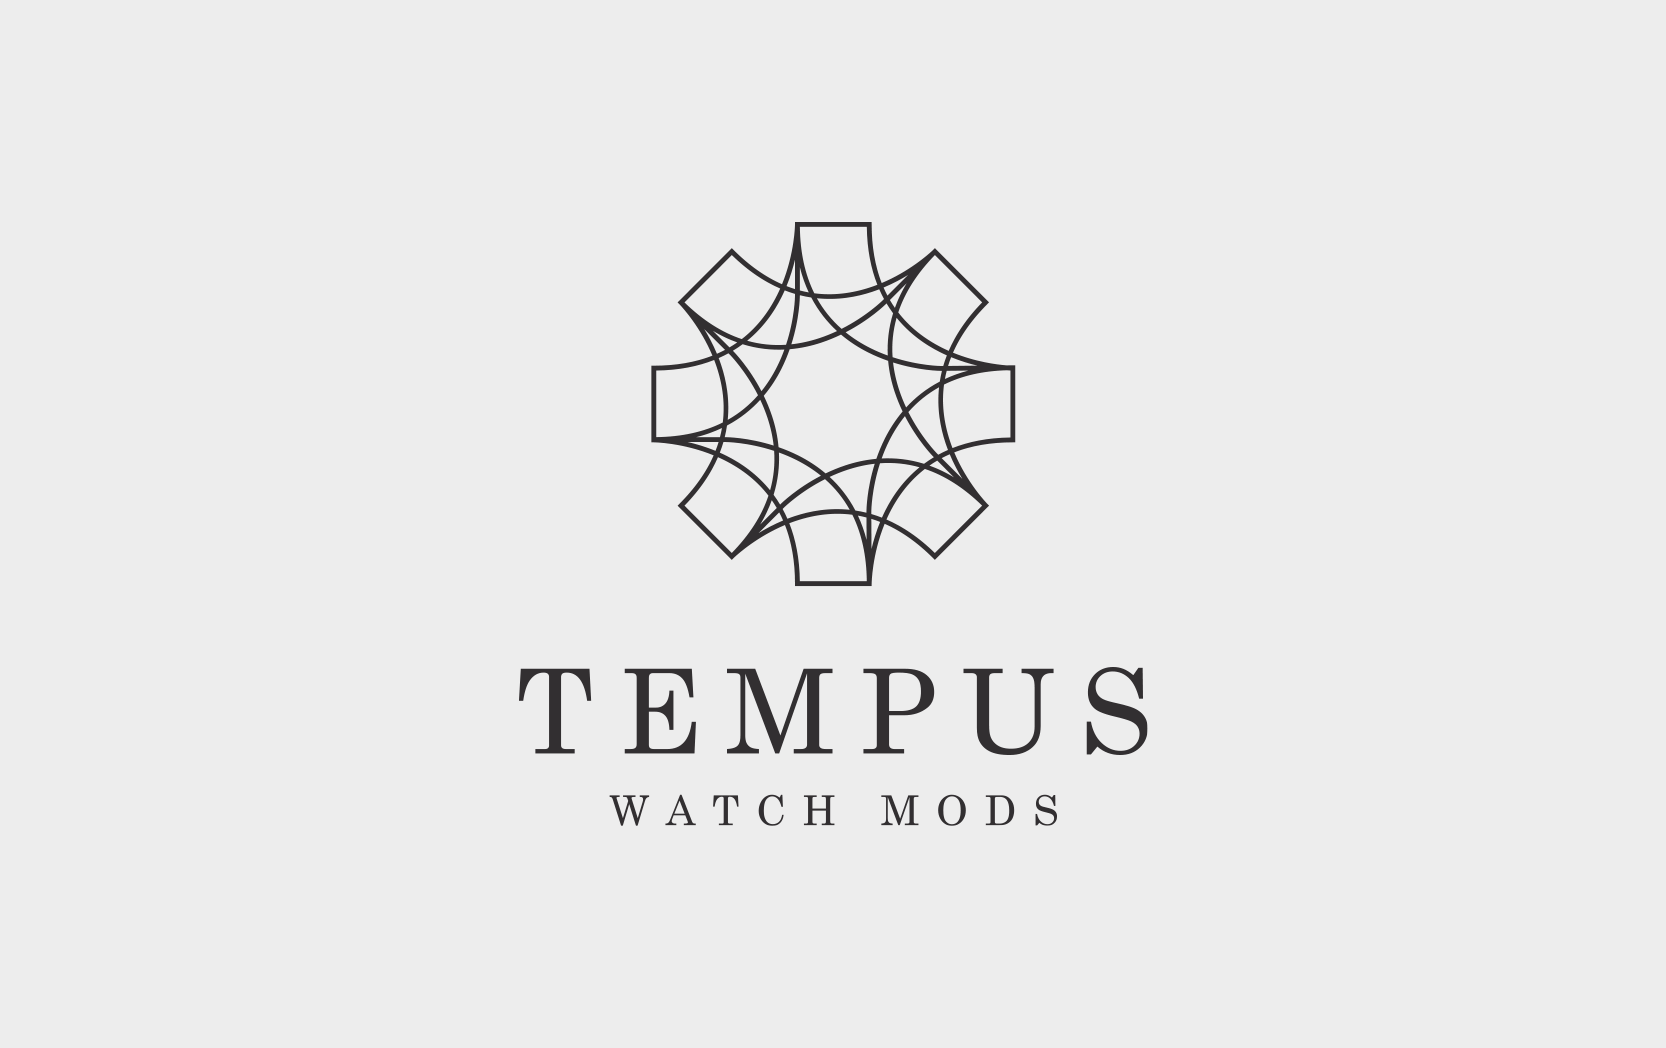 Tempus Watch Mods